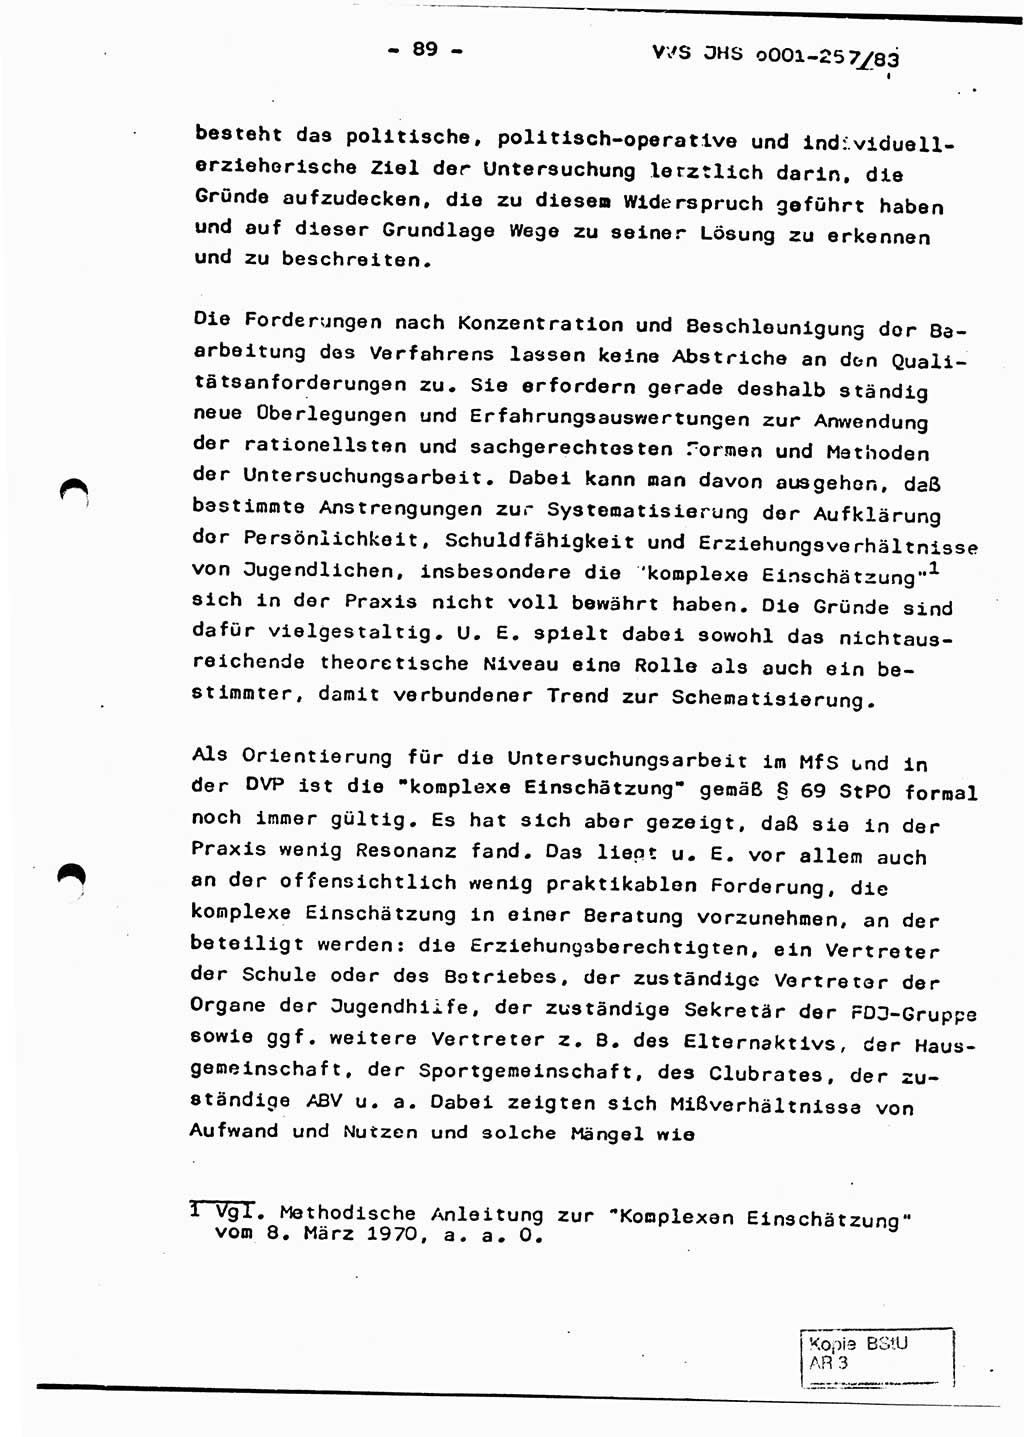 Dissertation, Oberst Helmut Lubas (BV Mdg.), Oberstleutnant Manfred Eschberger (HA IX), Oberleutnant Hans-Jürgen Ludwig (JHS), Ministerium für Staatssicherheit (MfS) [Deutsche Demokratische Republik (DDR)], Juristische Hochschule (JHS), Vertrauliche Verschlußsache (VVS) o001-257/83, Potsdam 1983, Seite 89 (Diss. MfS DDR JHS VVS o001-257/83 1983, S. 89)